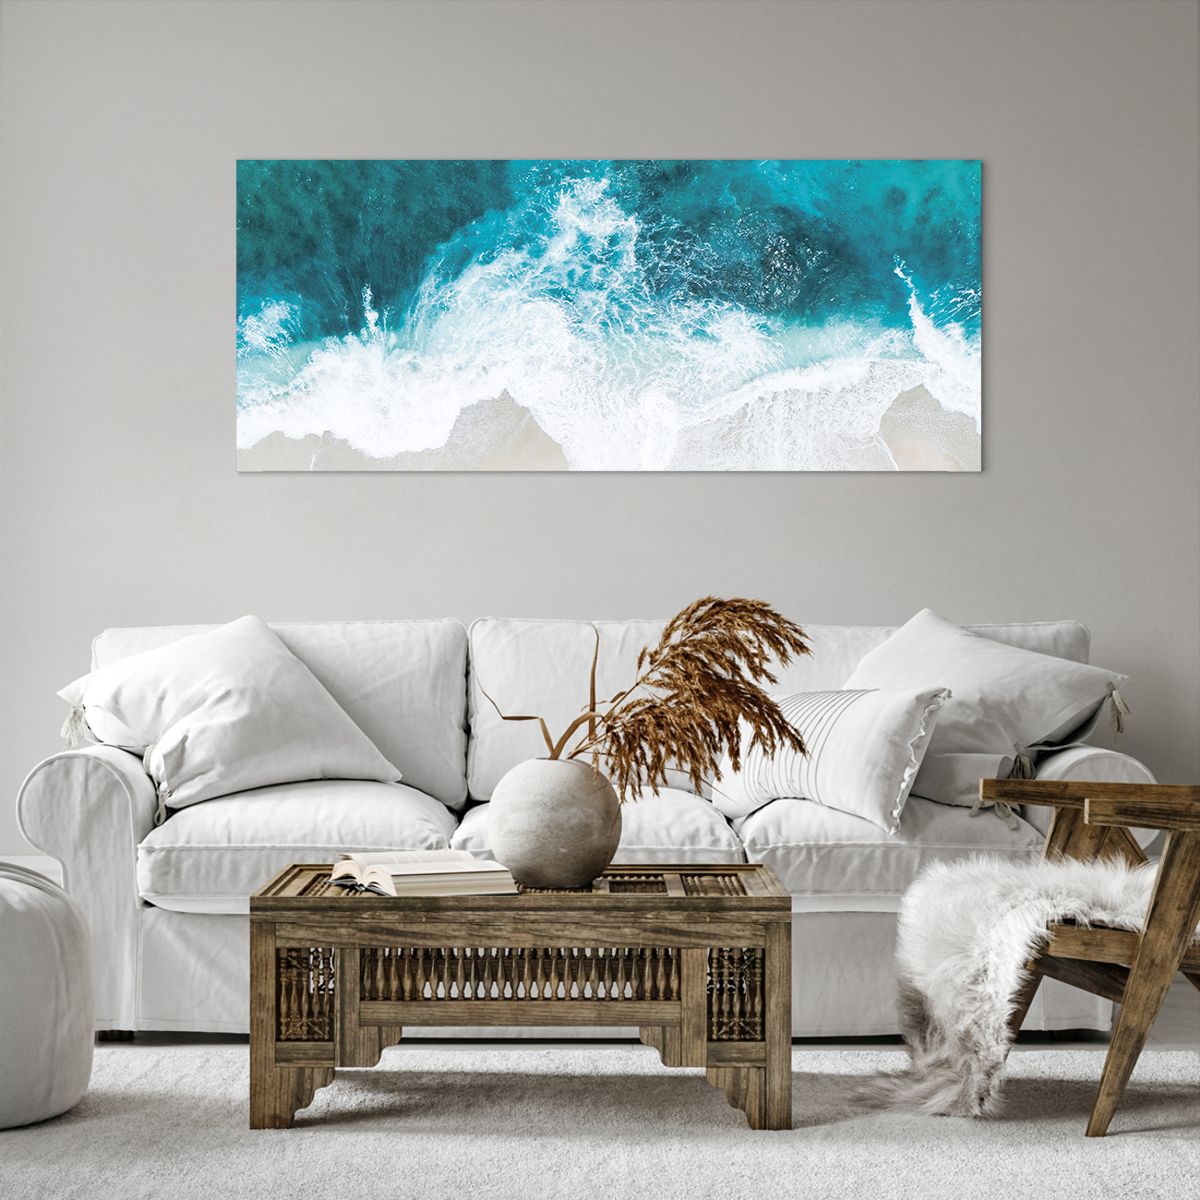 Quadro su tela Paesaggio, Quadro su tela Spiaggia, Quadro su tela Onda Marina, Quadro su tela Mare, Quadro su tela Oceano